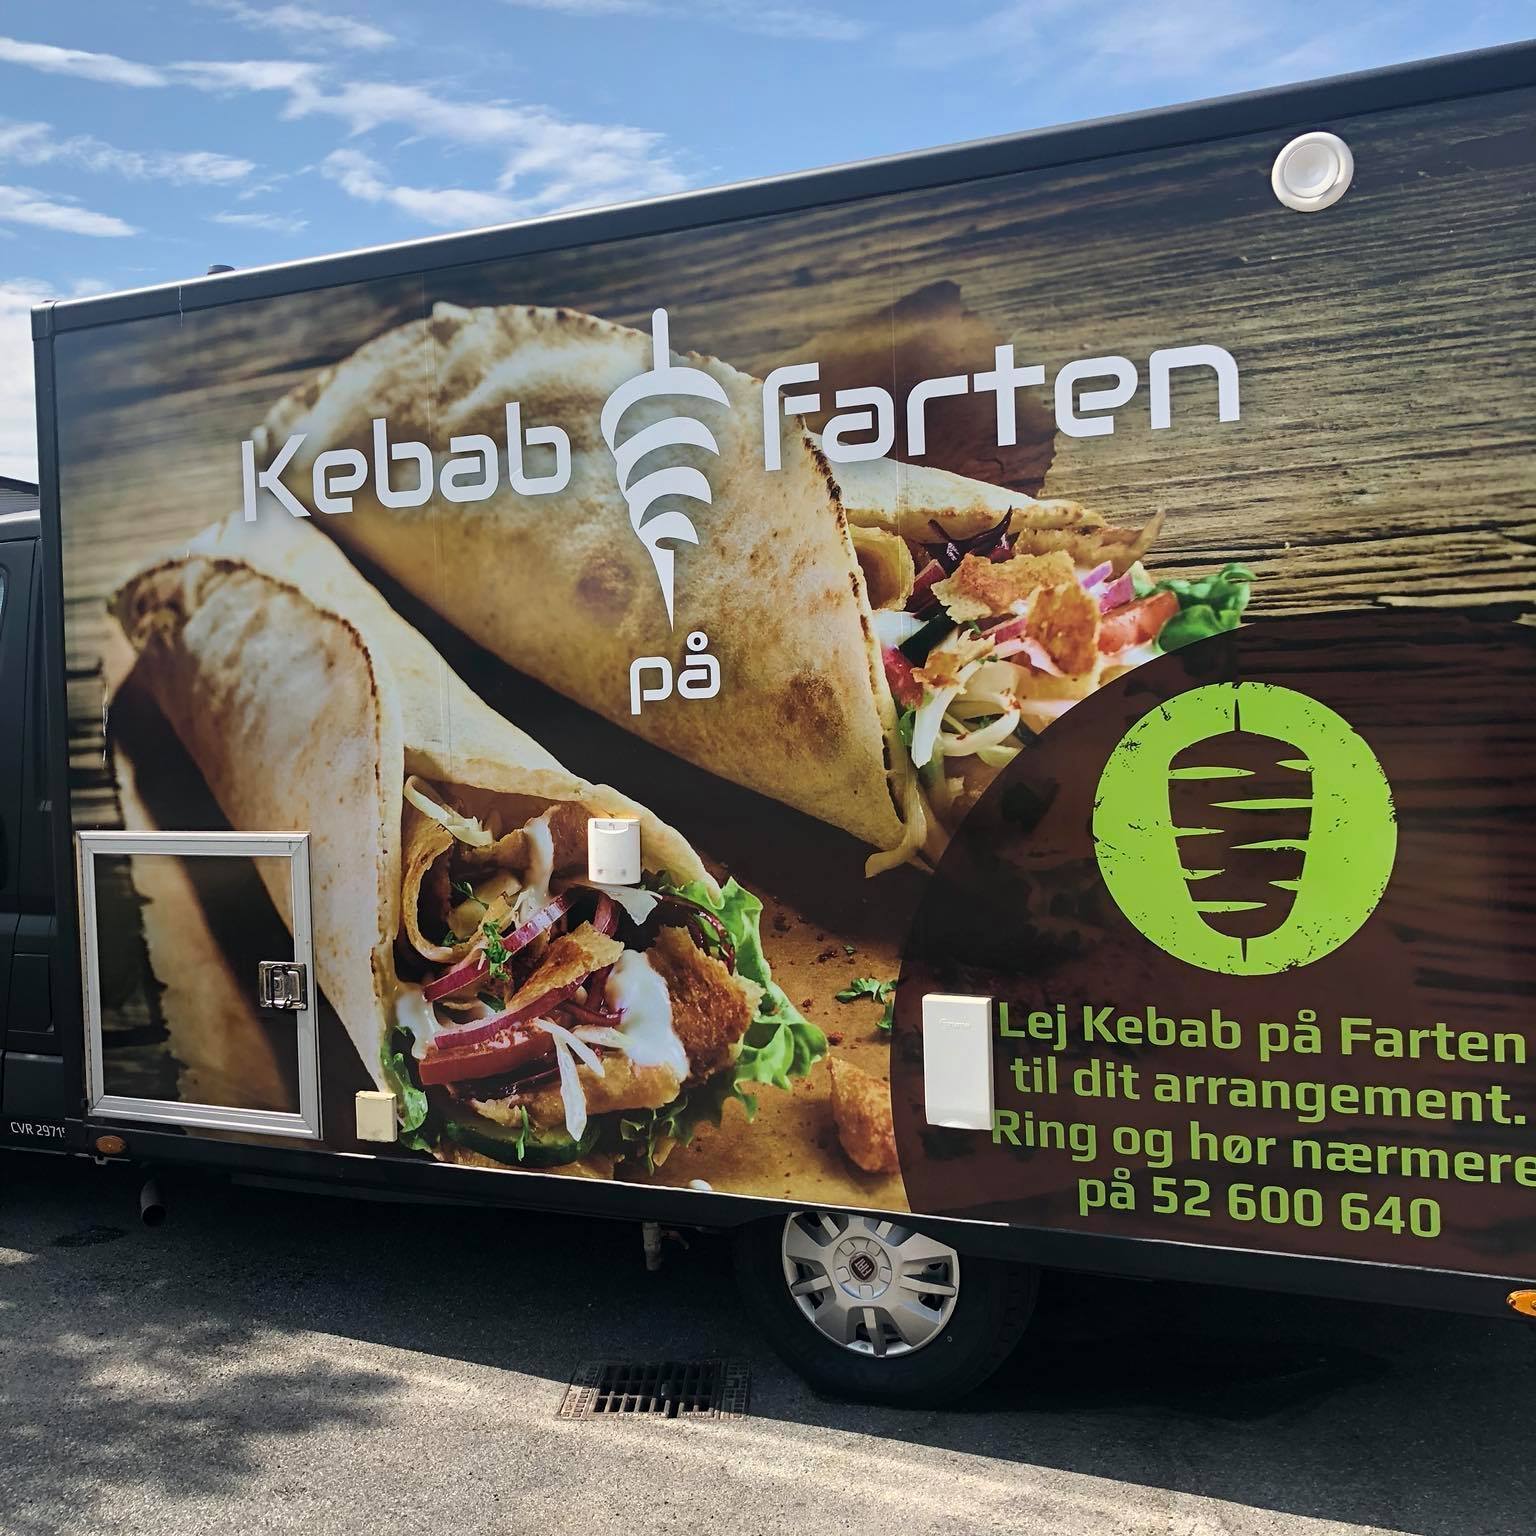 Kebab på farten - Lej en pølsevogn, kebabvogn foodtruck i Ballerup